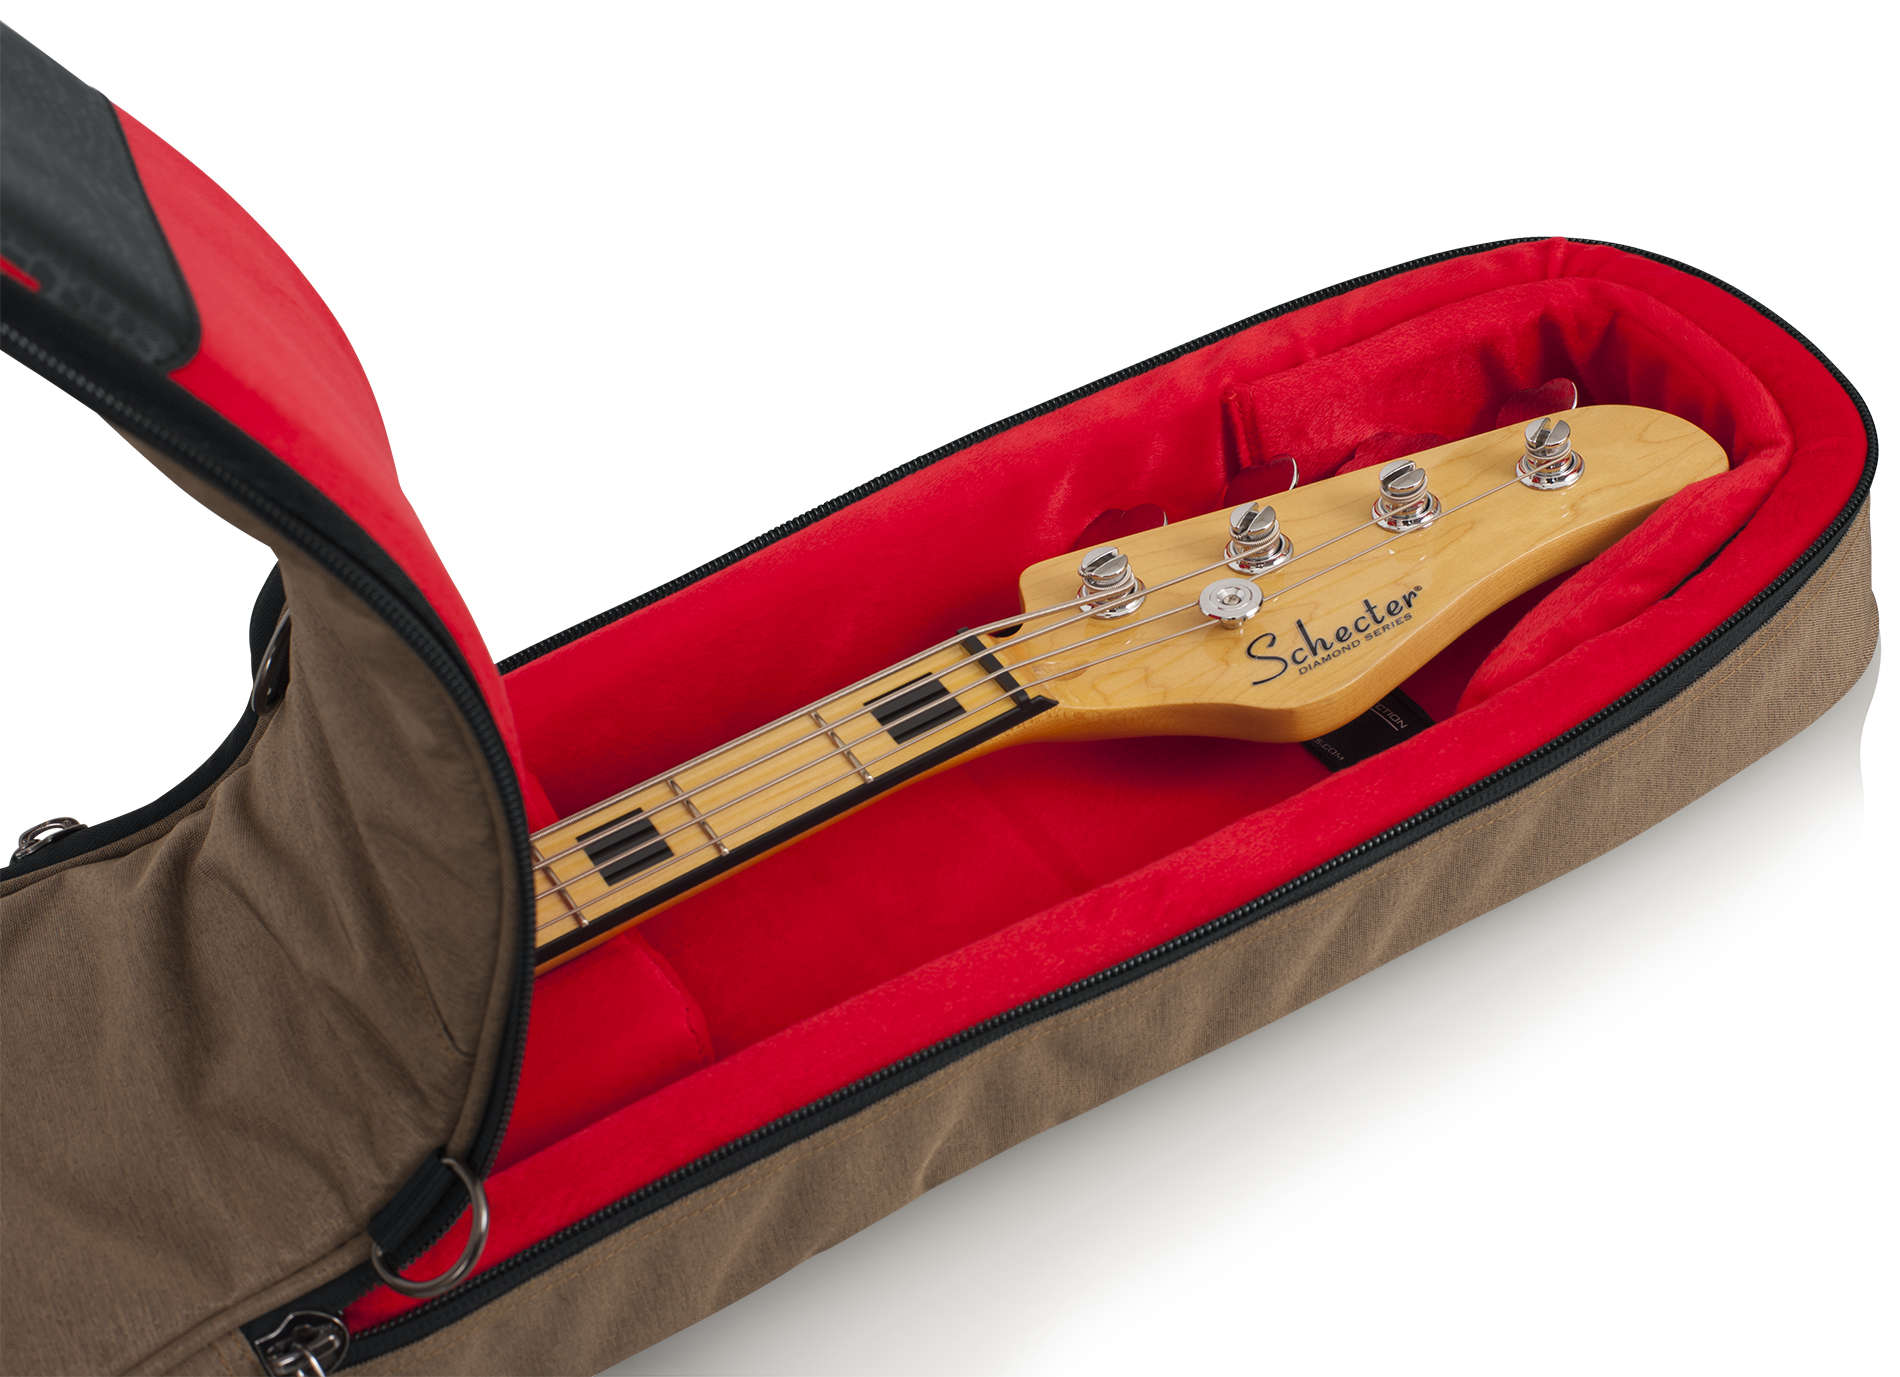 Transit Bass Guitar Bag; Tan-GT-BASS-TAN